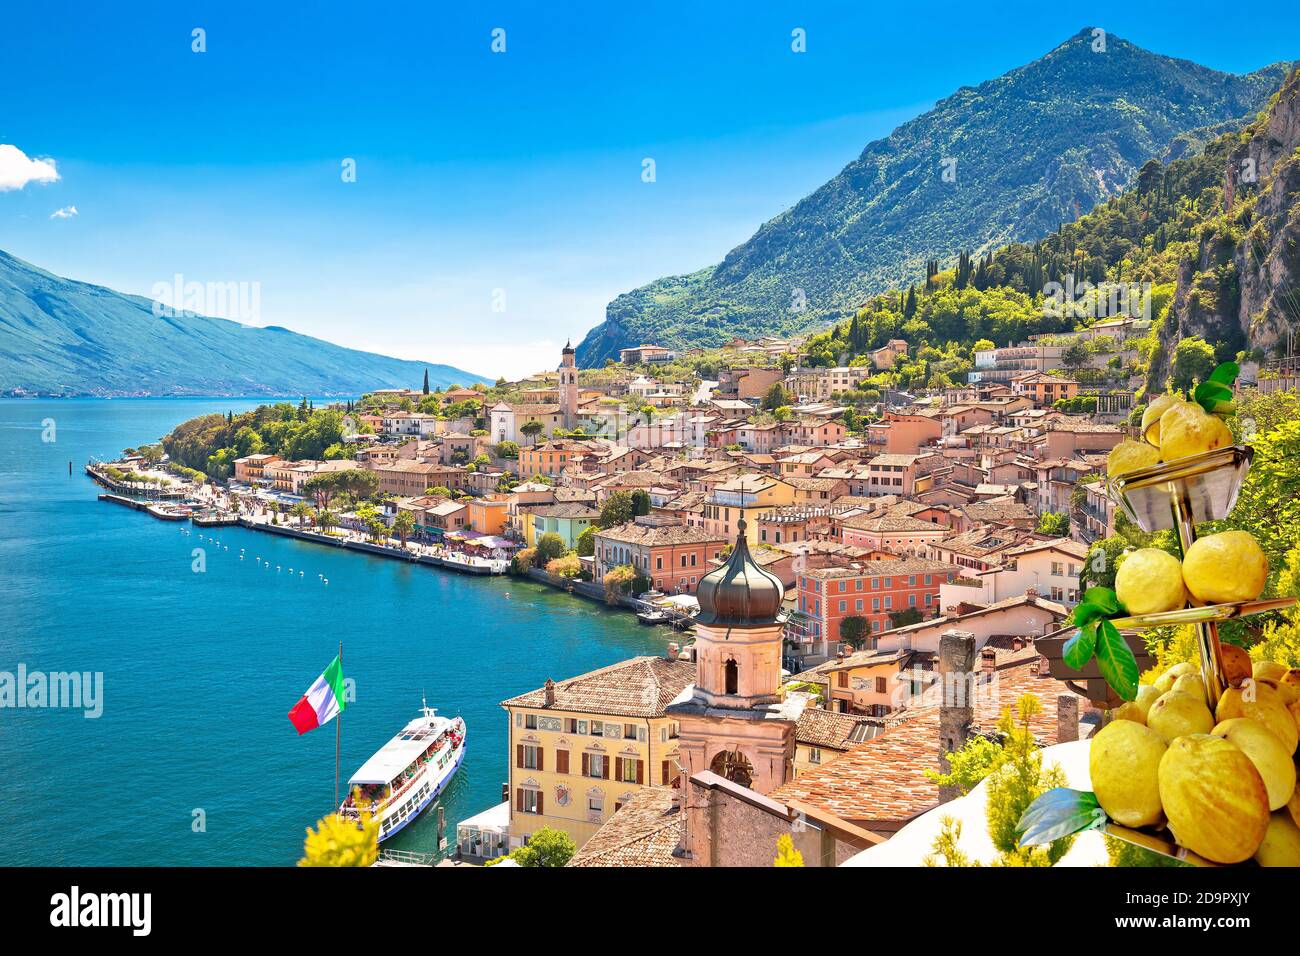 Stadt Limone sul Garda am Gardasee, Lombardei Region von Italien Stockfoto